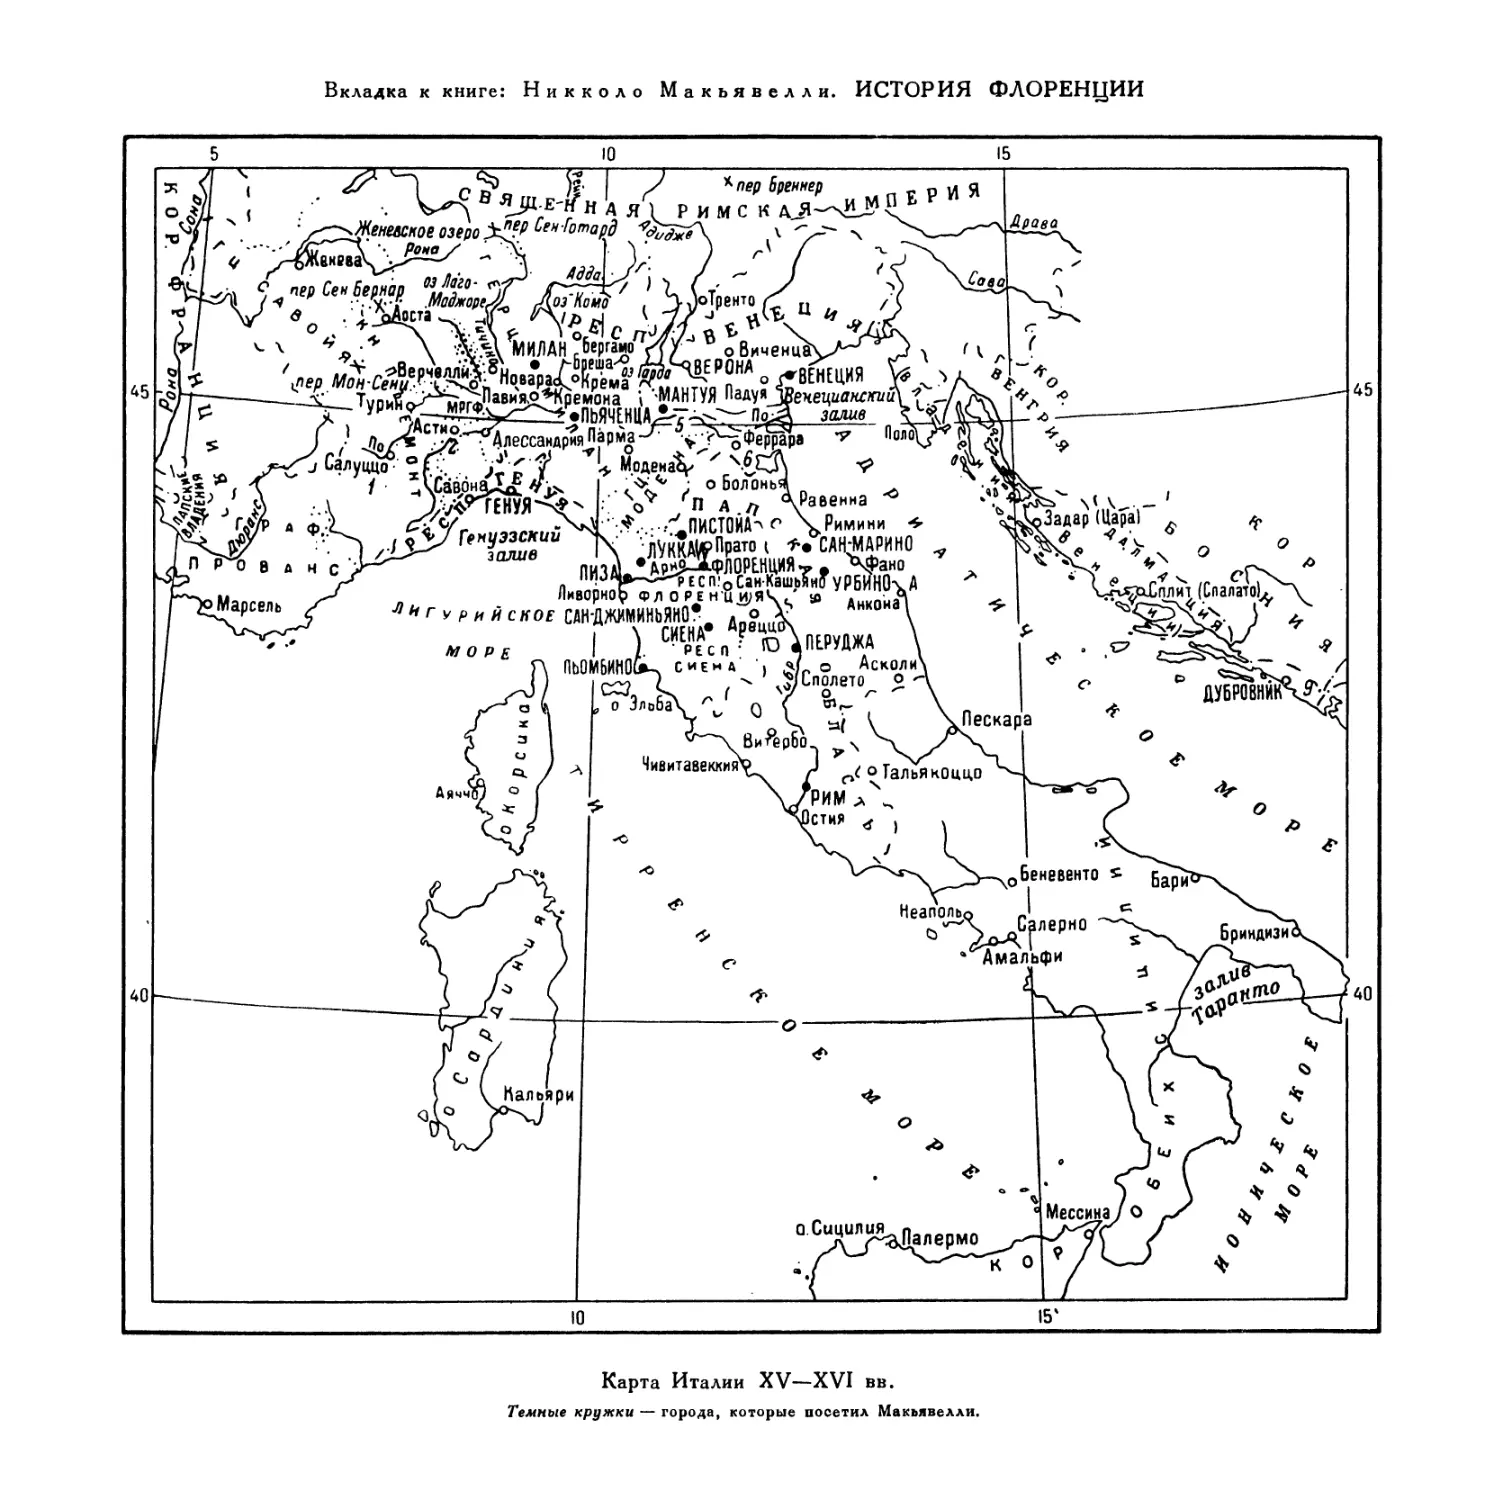 Вкладка. Карта Италии XV—XVI вв.